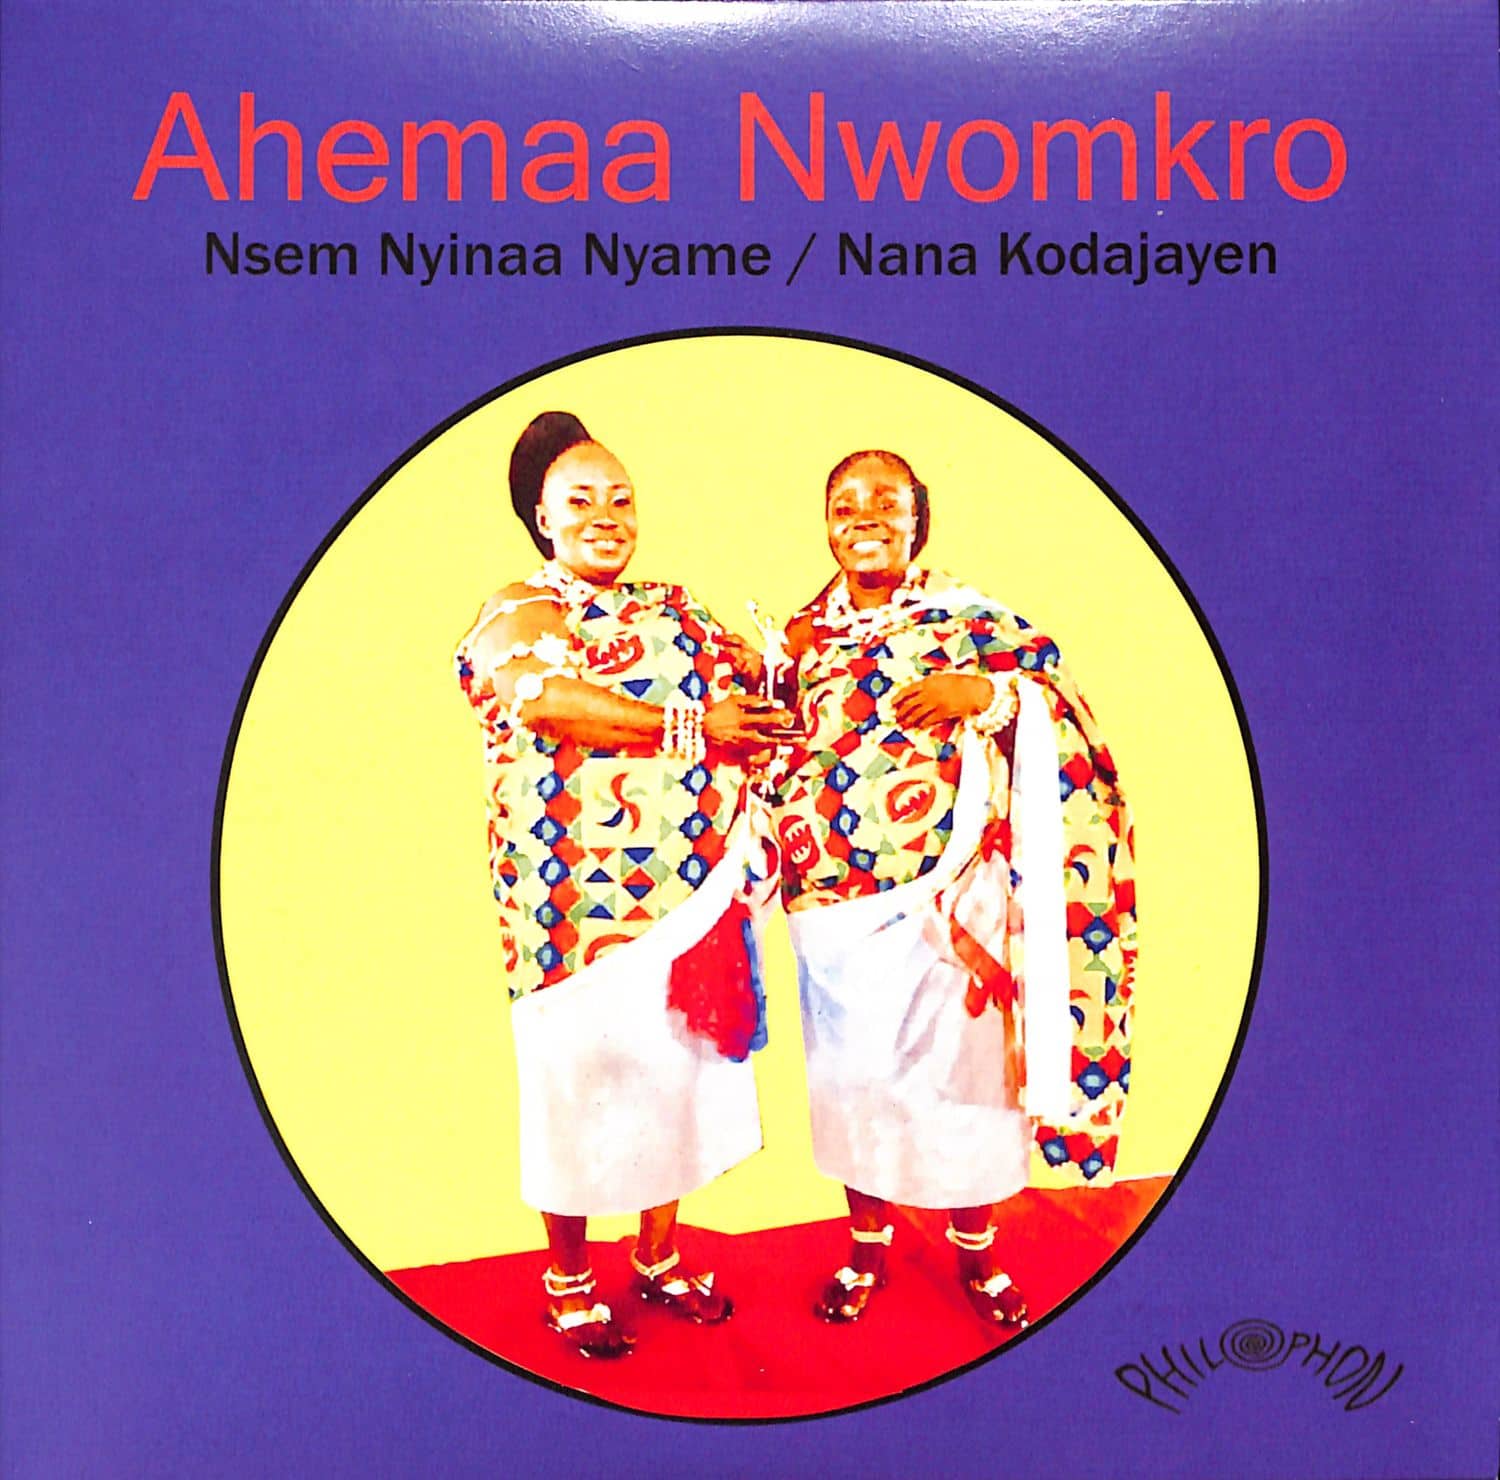 Ahemaa Nwomkro - NSEM NYINAA NYAME 